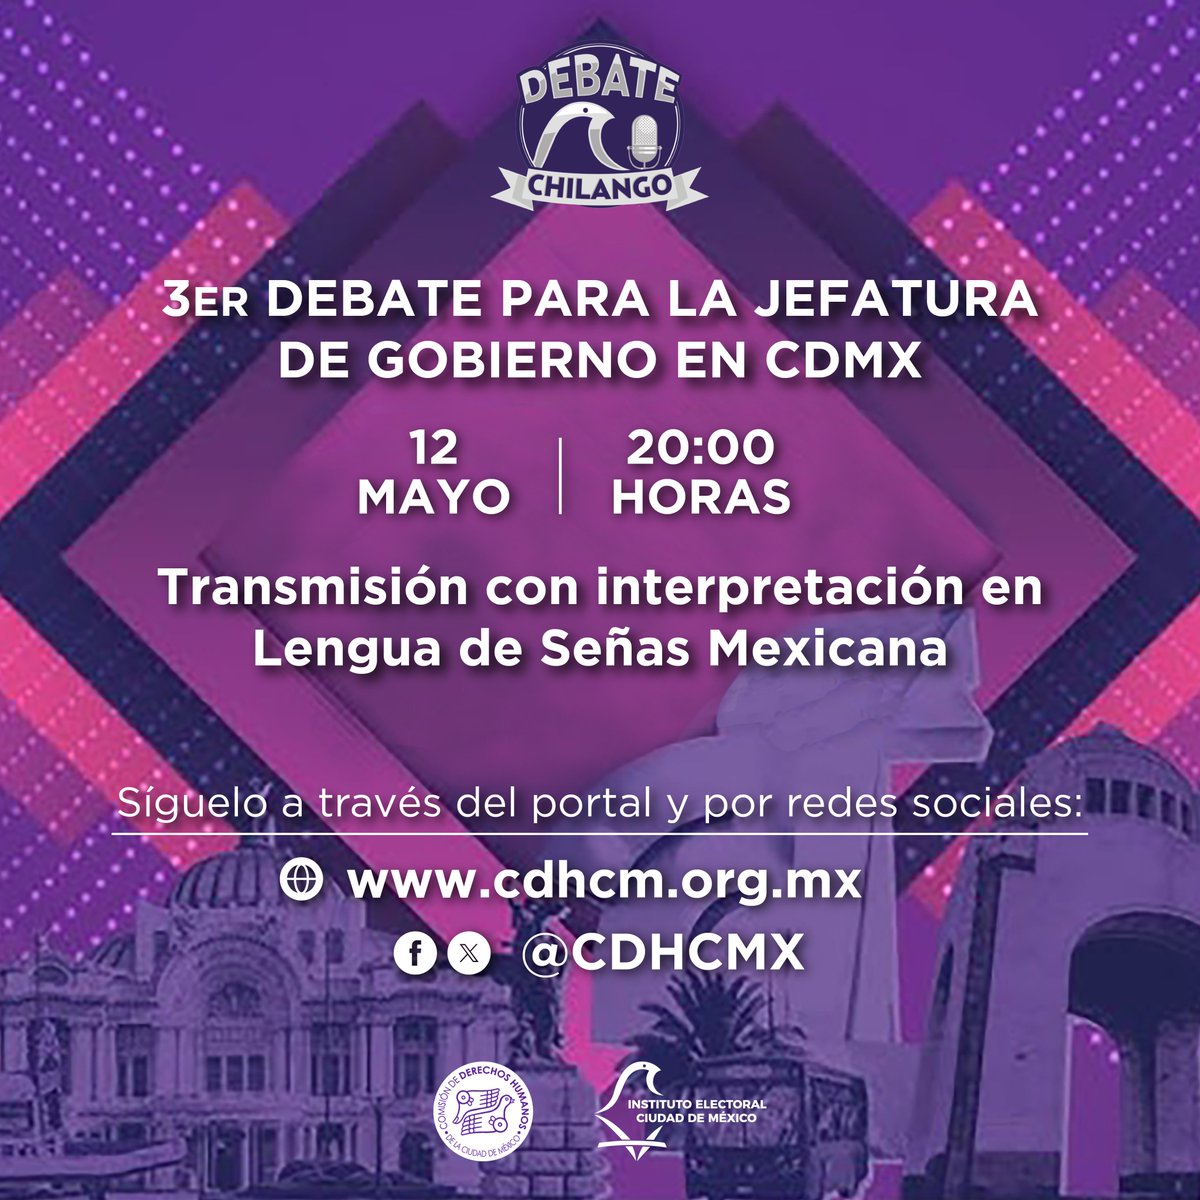 La #CDHCM transmitirá por sus redes sociales el Tercer #DebateChilango para la Jefatura de Gobierno #EleccionesCDMX🗳️ en señal exclusiva con Lengua de Señas Mexicana #LSM. Únete a la transmisión 🗓️el domingo 12 de mayo, a partir de las⏰20:00 horas.